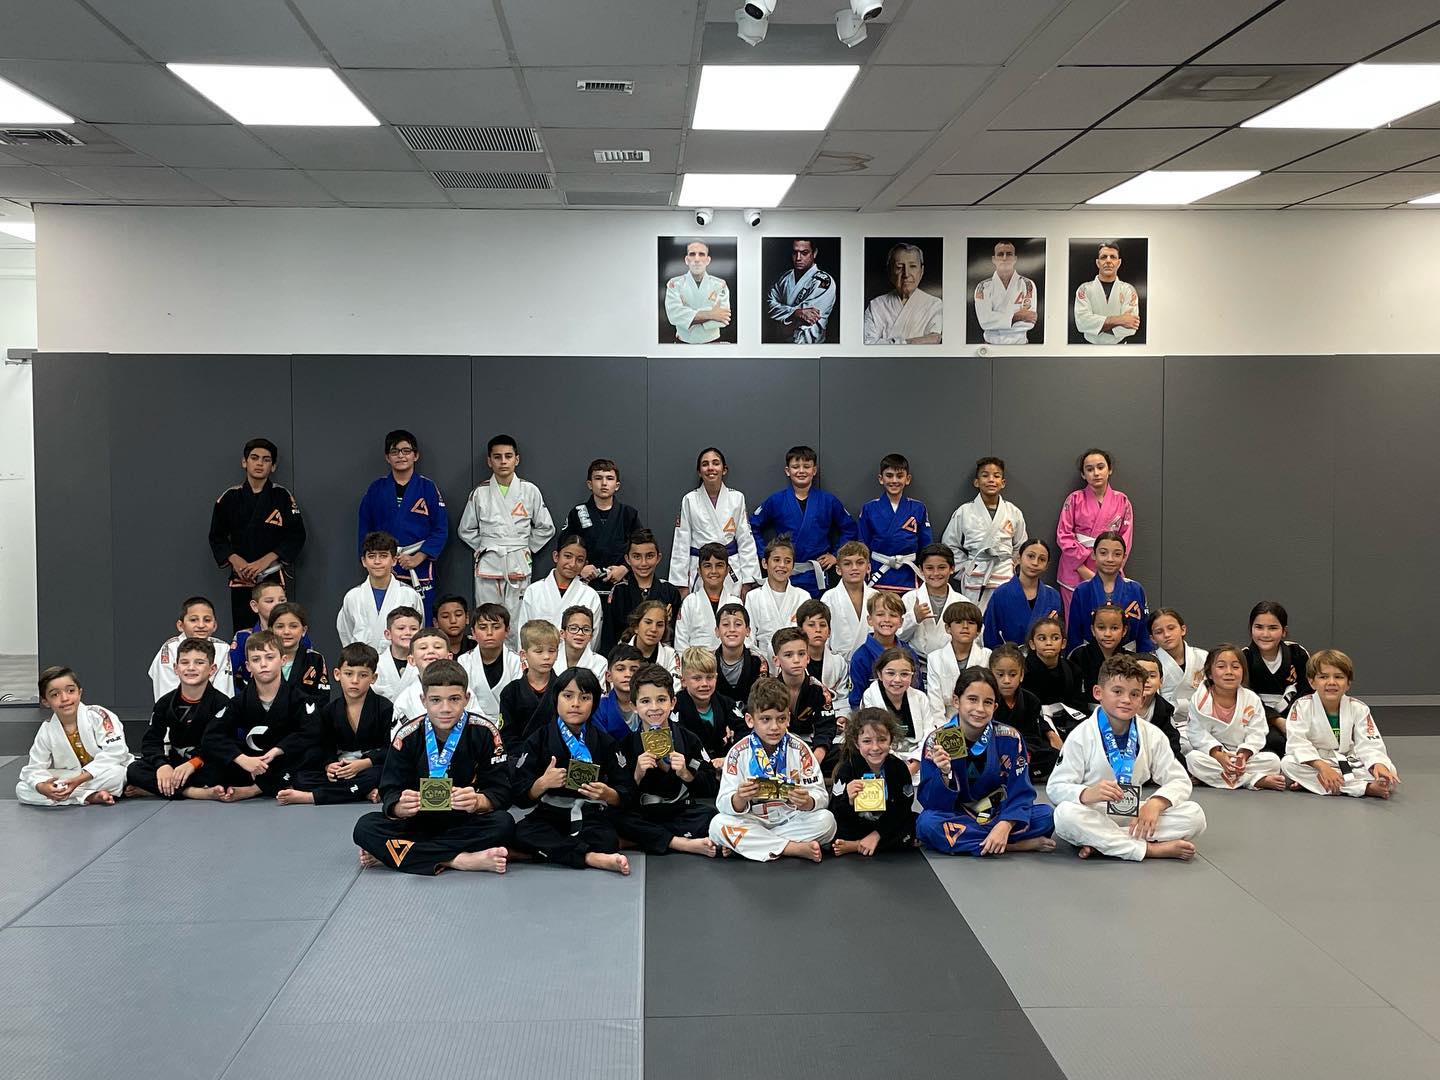 Rilion Gracie Miami Lakes Jiu-Jitsu Academy Athletes Shine at 2023 Pan Kids Championship, Securing 8 Medals